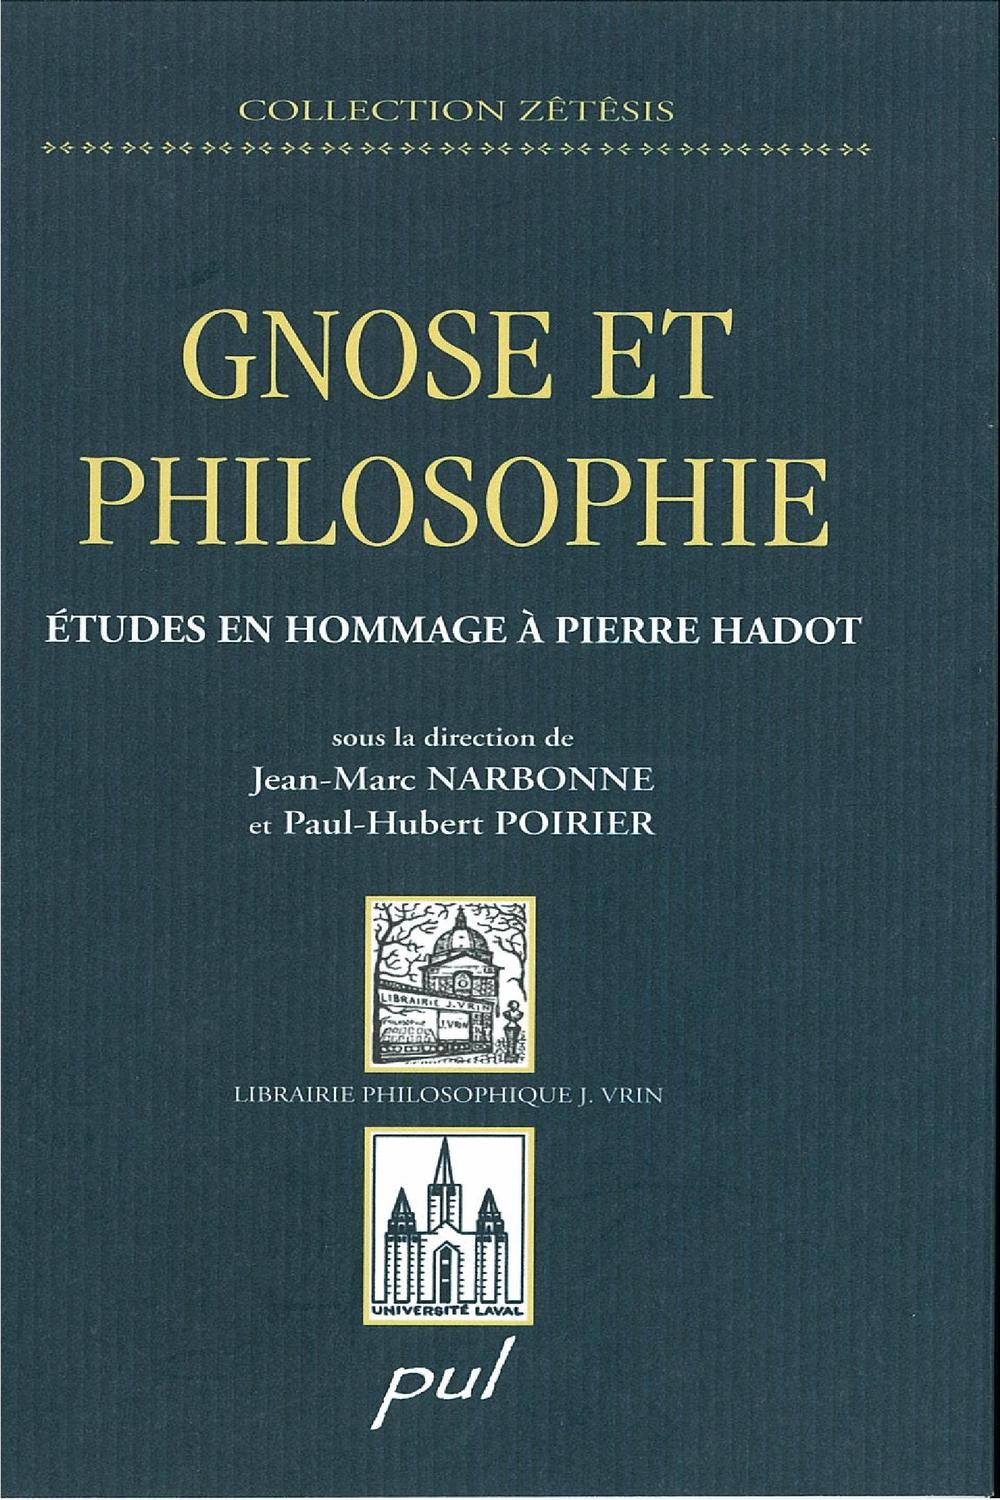 Gnose et philosophie : Études en hommage à Pierre Hadot - Paul-Hubert Poirier, Jean-Marc Narbonne